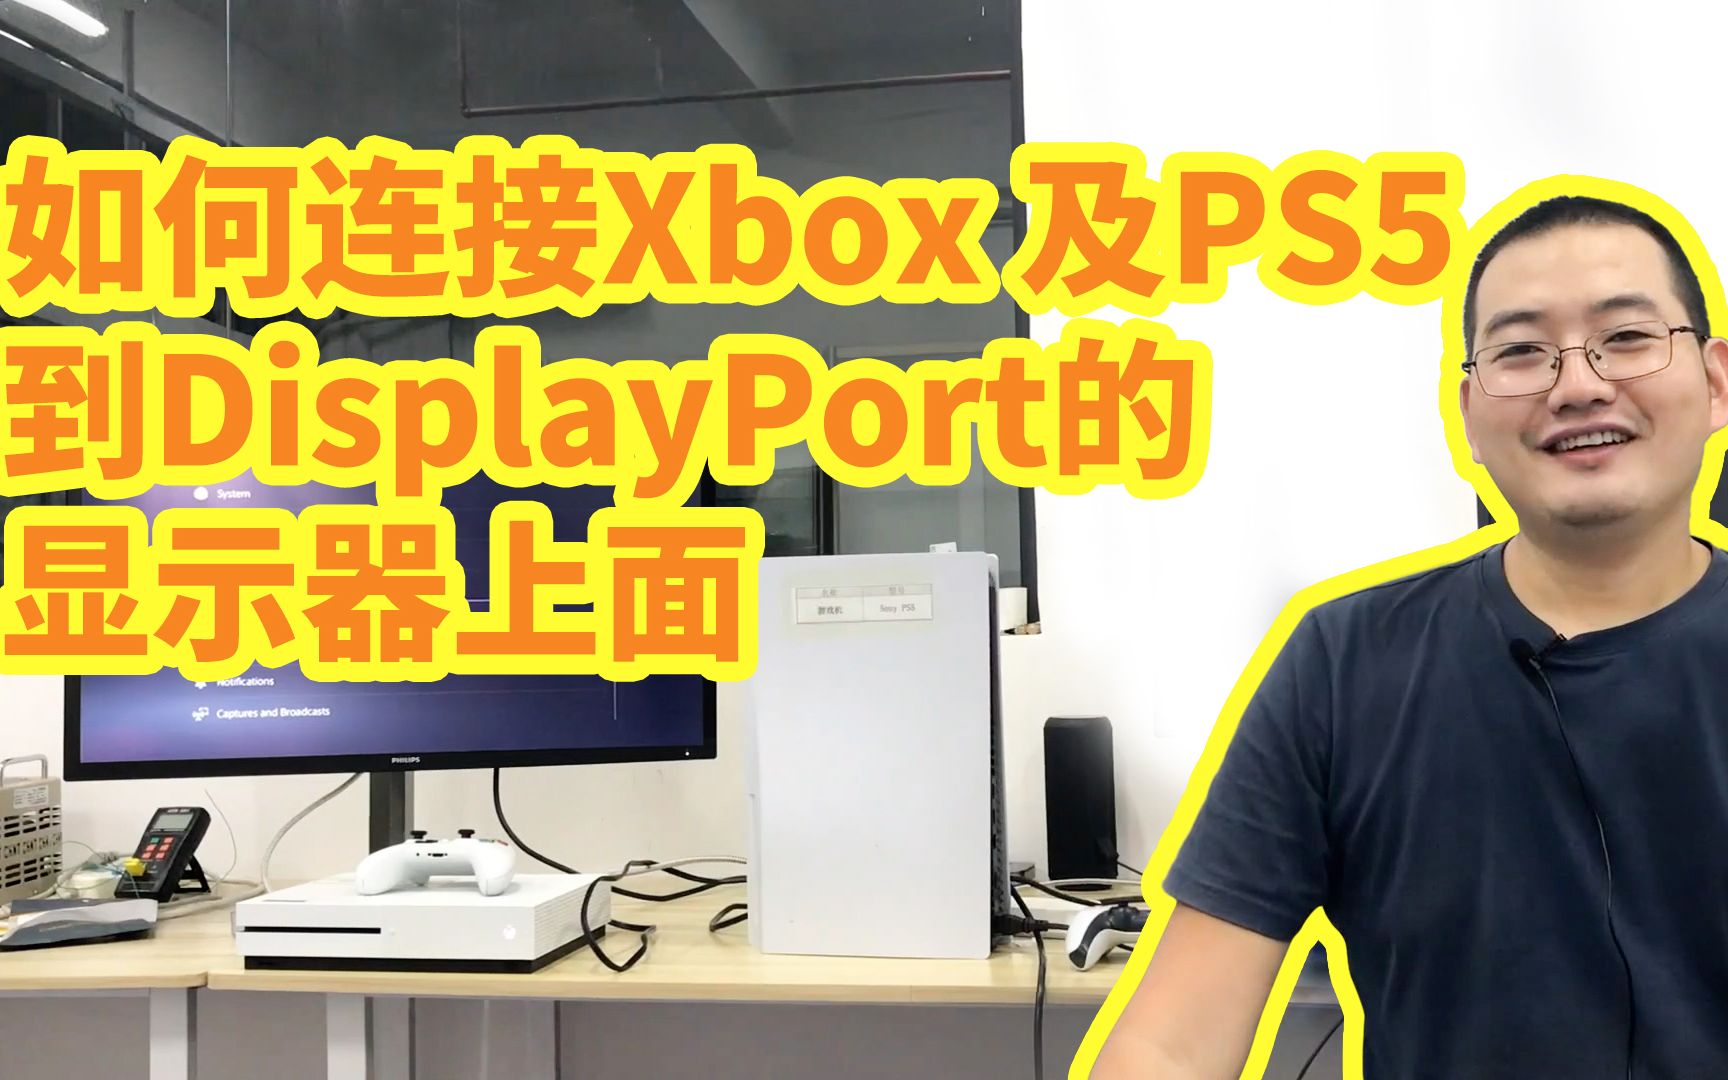 如何连接PS5 跟Xbox 到DislayPort的显示器上面